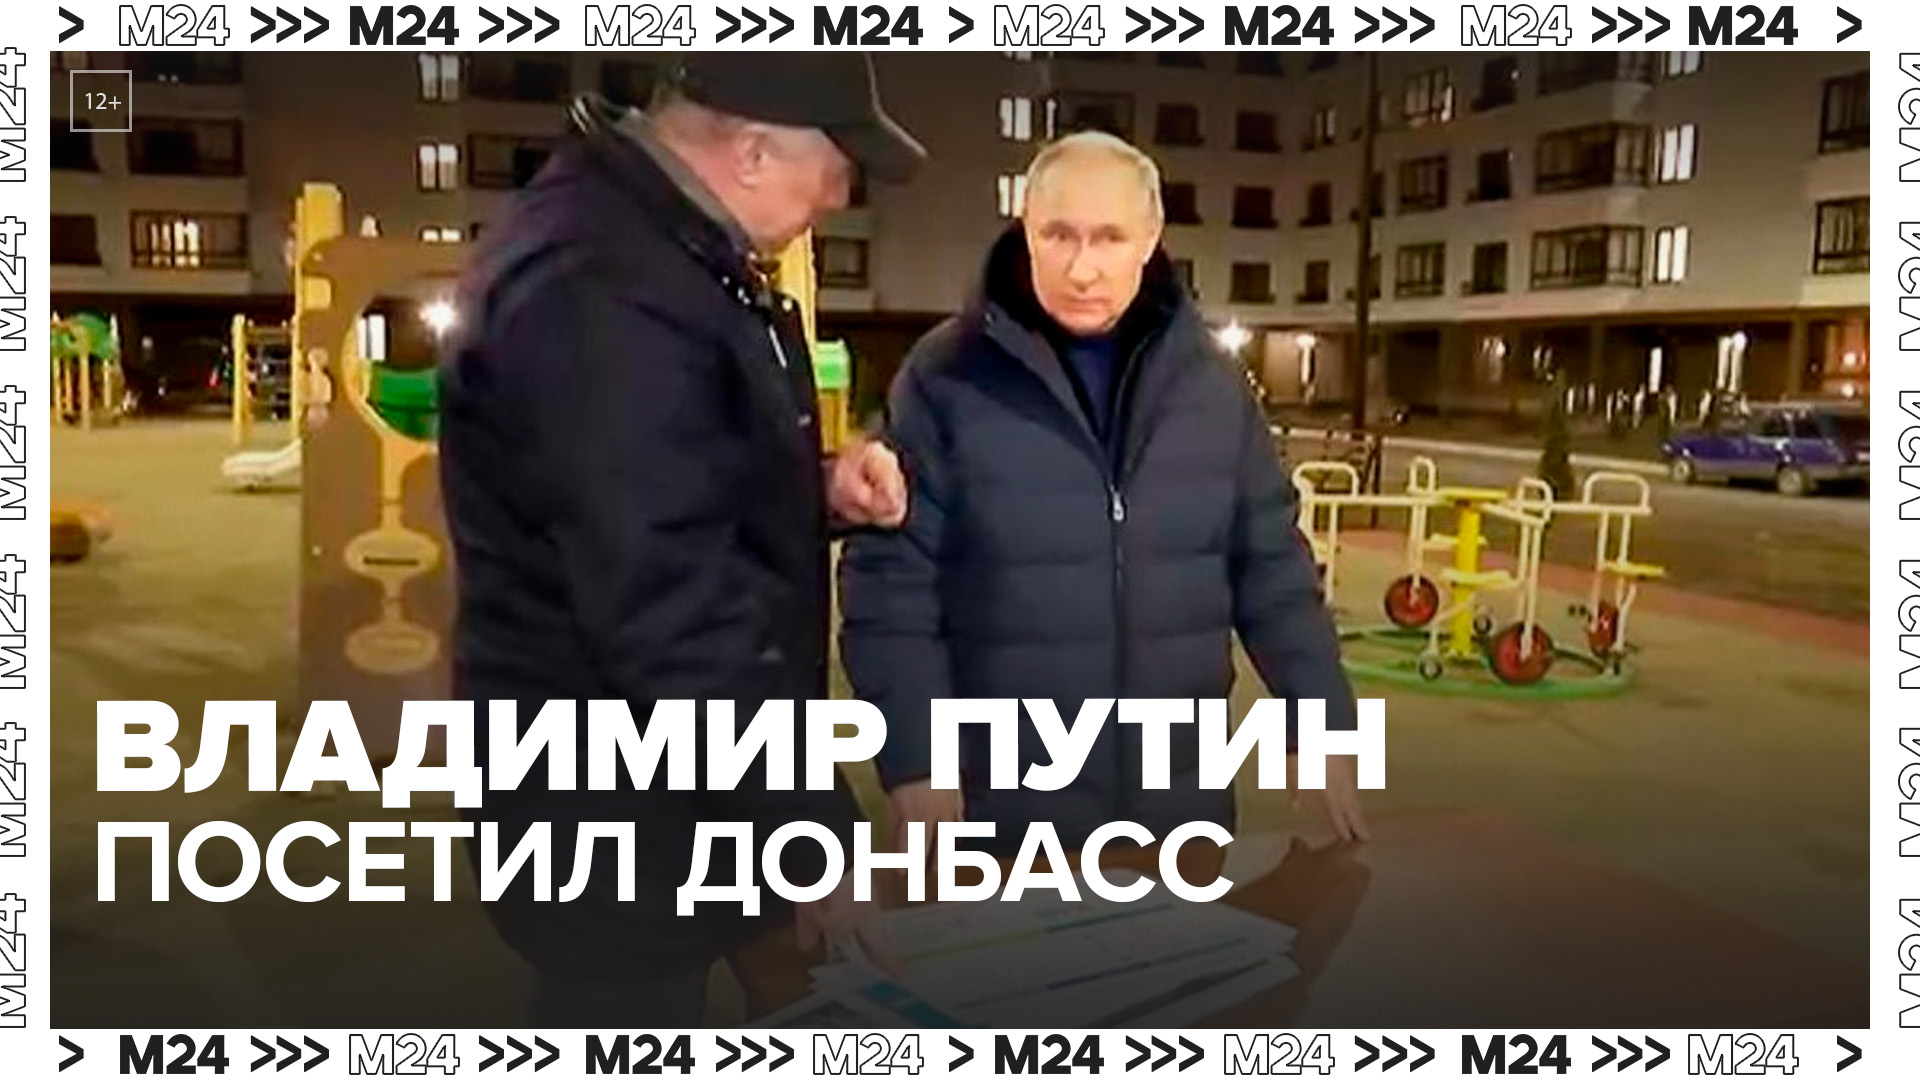 Путин посетил Донбасс впервые с начала СВО - Москва 24